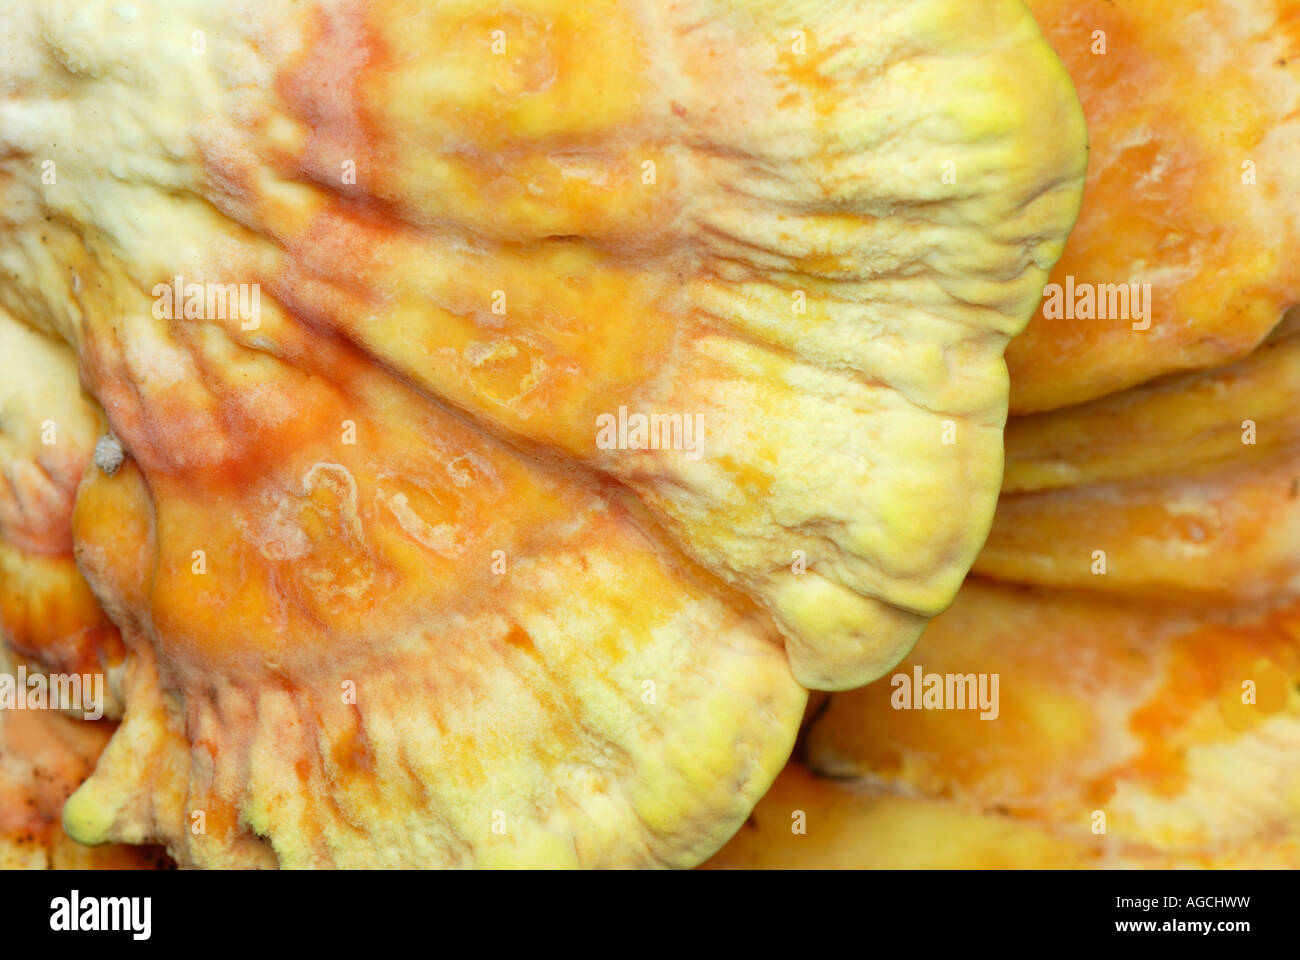 Sulphureus : est un champignon comestible populaire connue communément comme le poulet des bois Banque D'Images